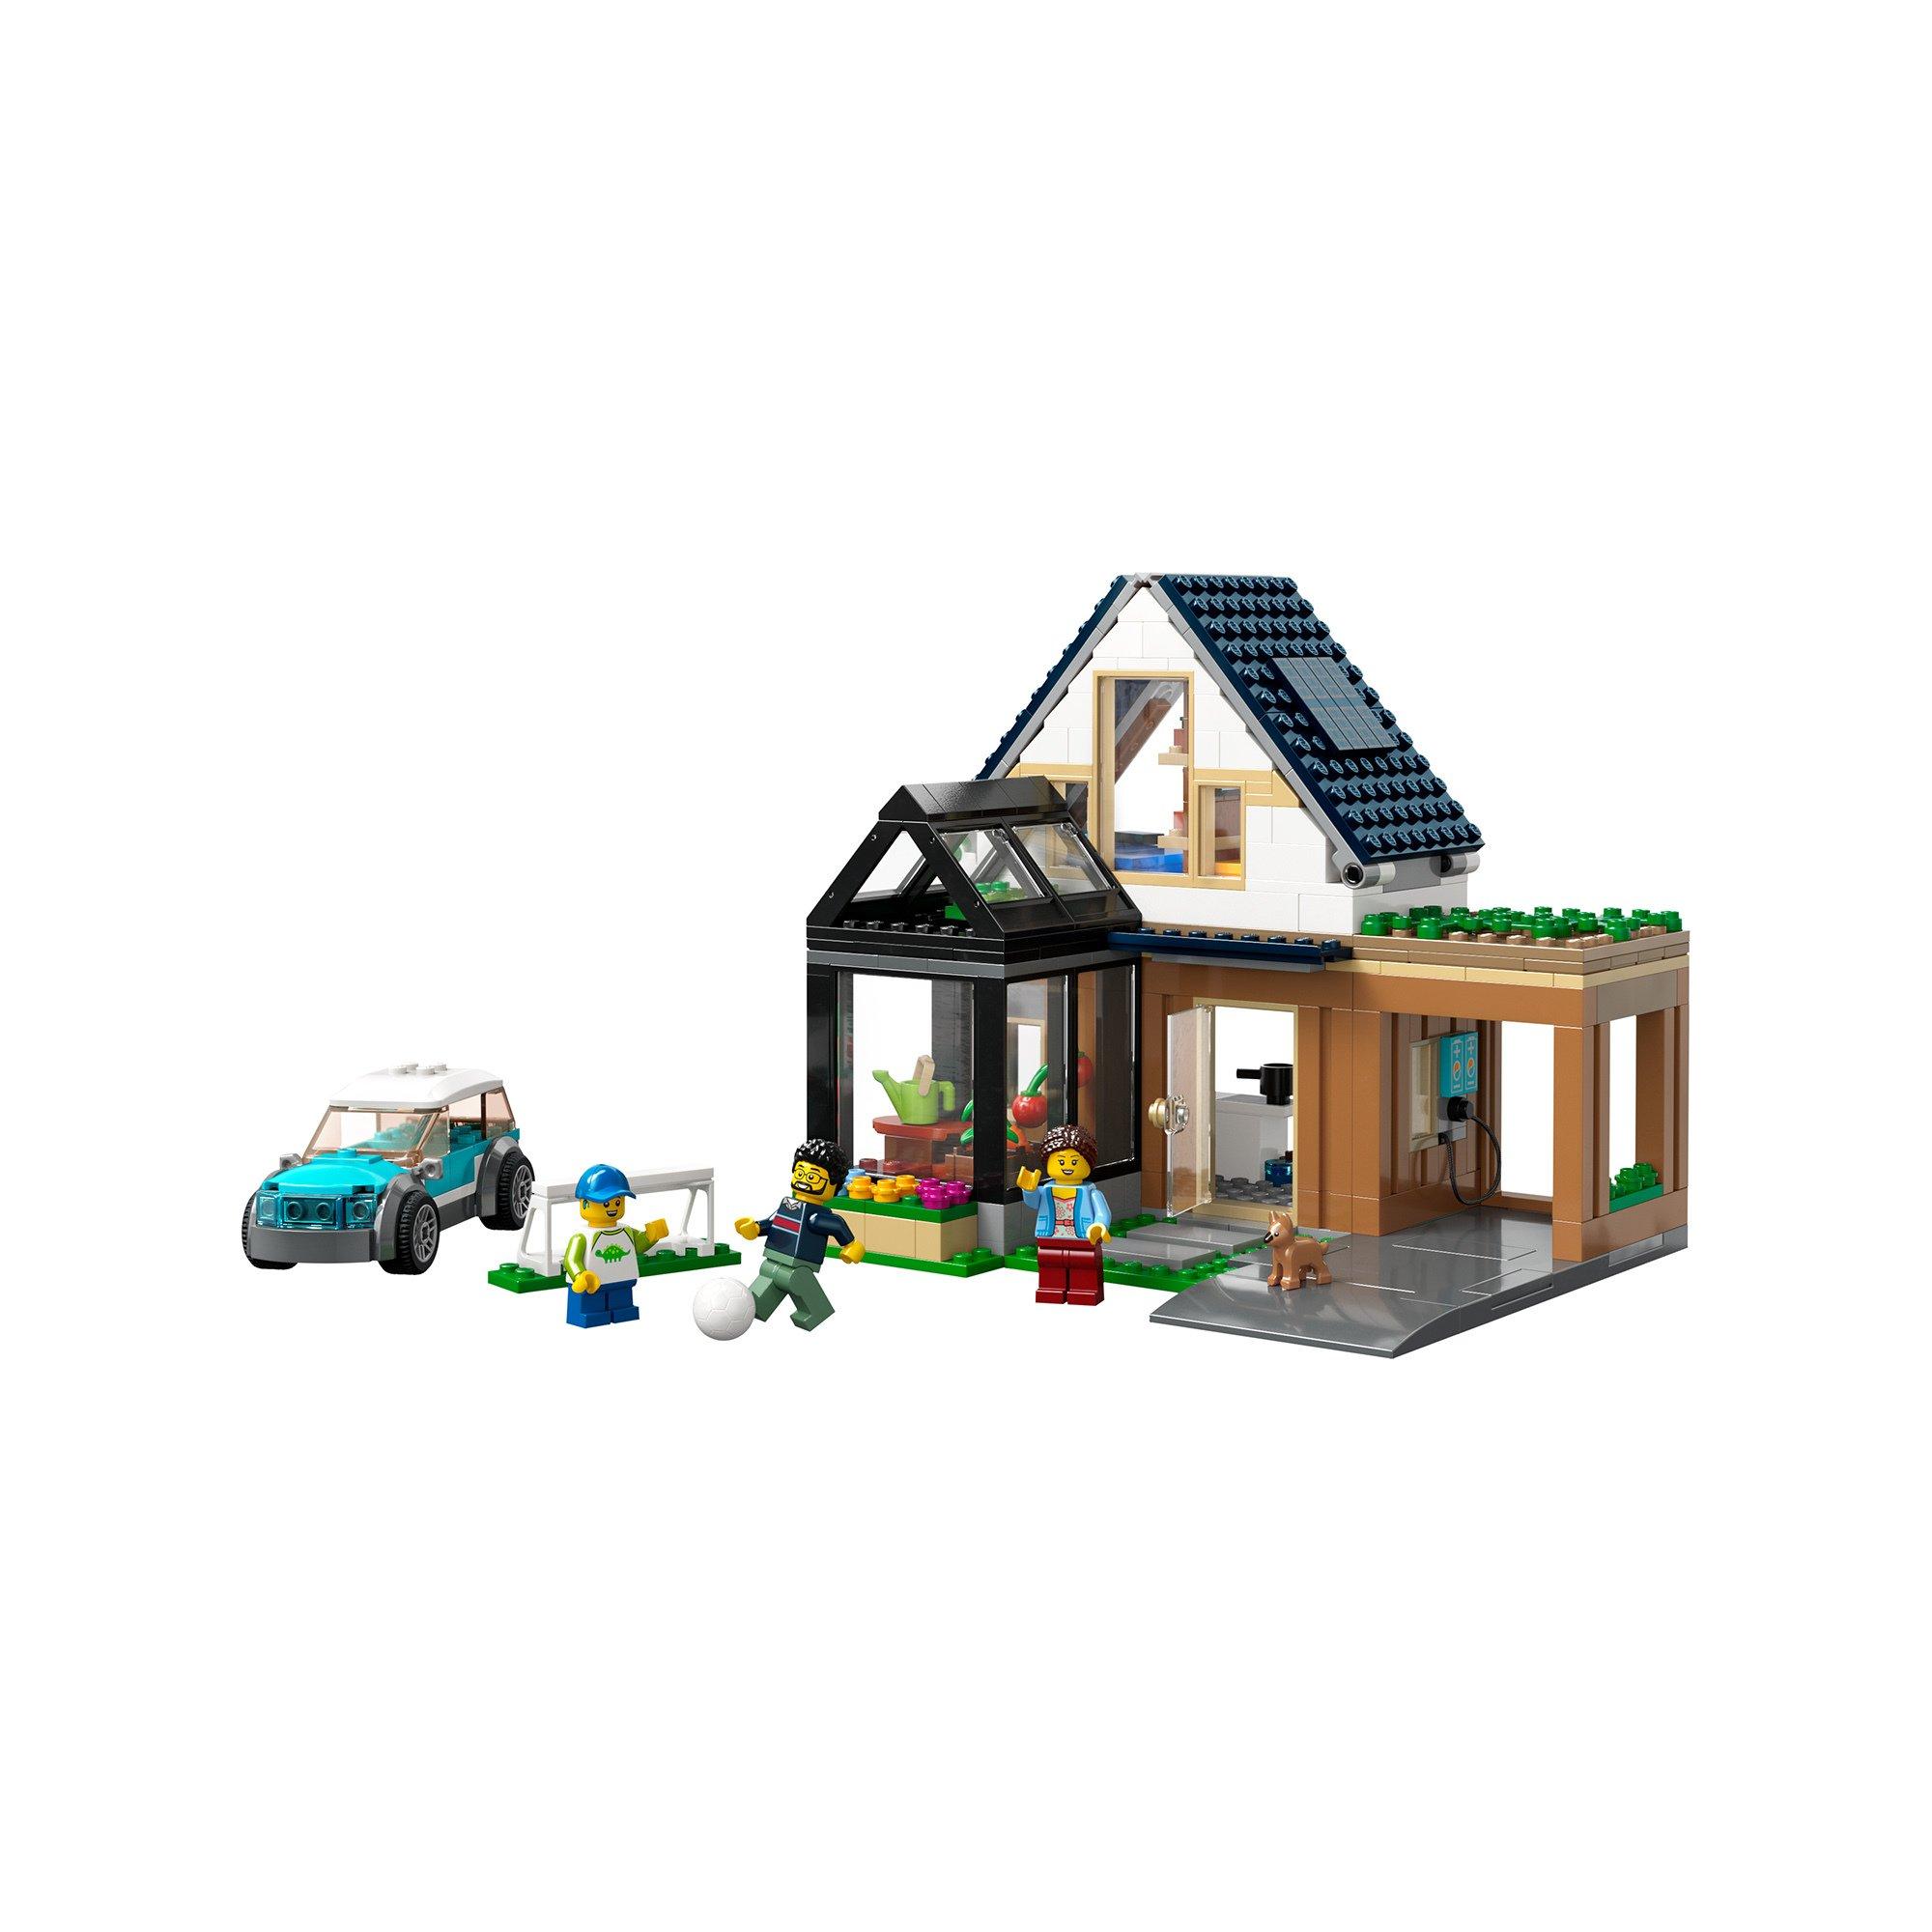 LEGO®  60398 Familienhaus mit Elektroauto 